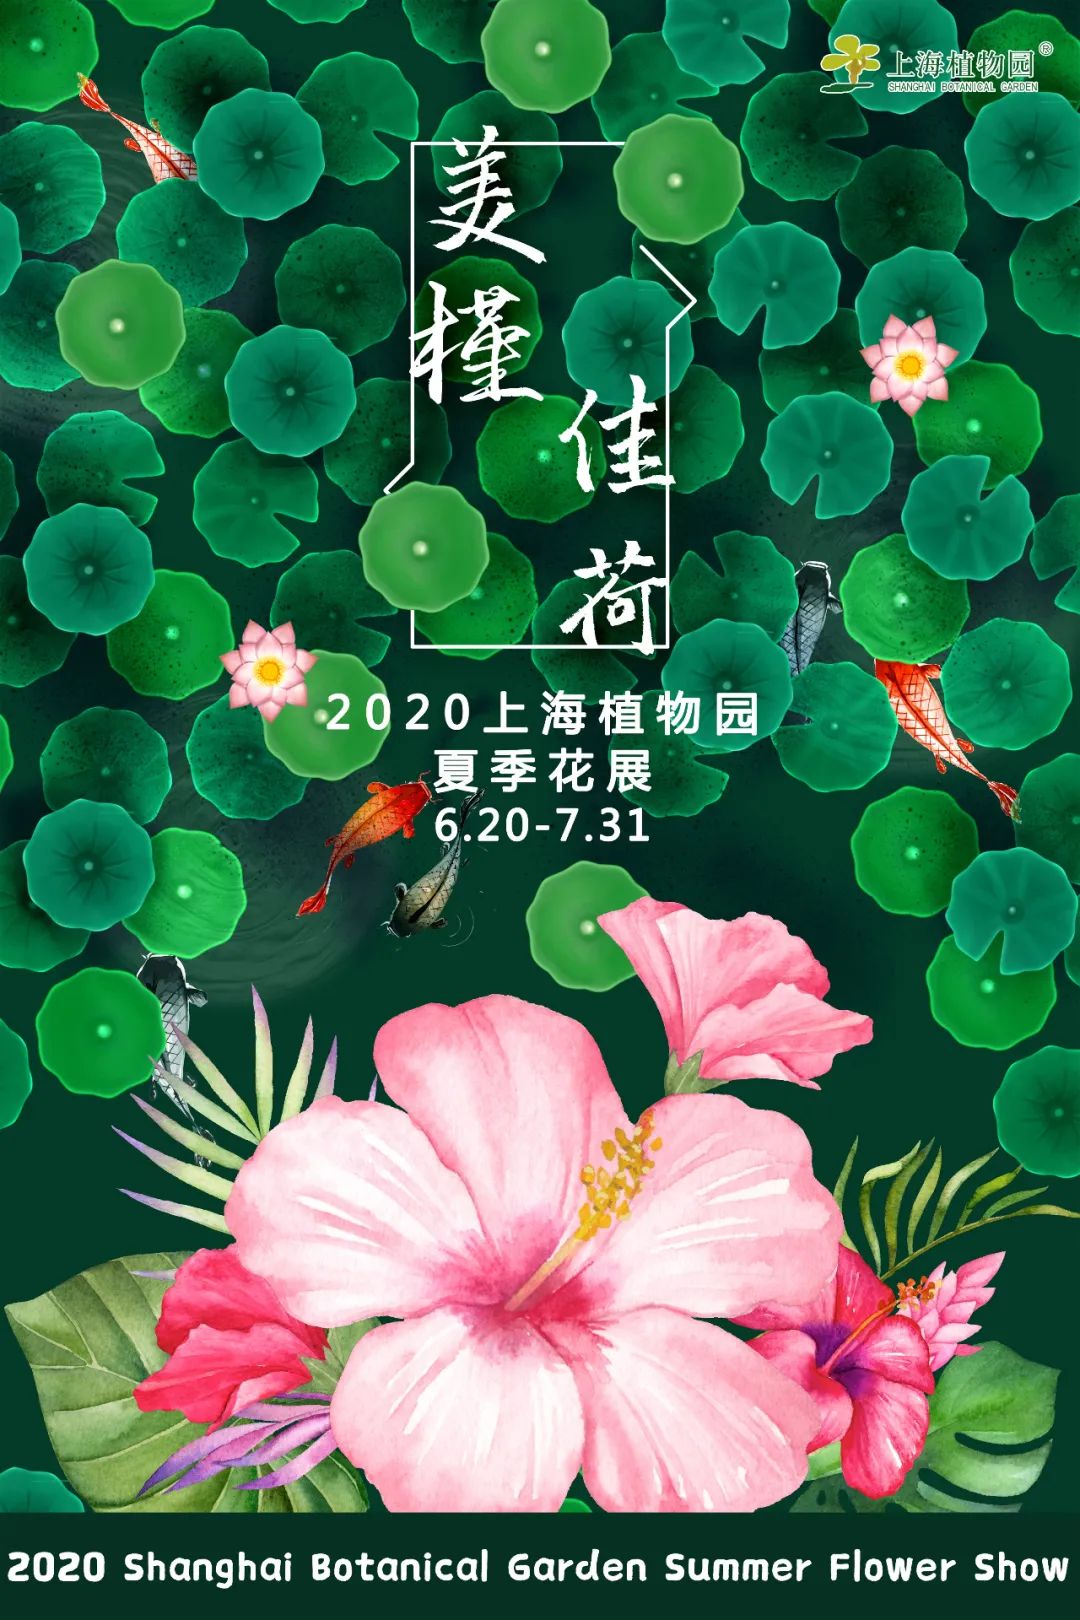 上海植物园夏季花展 上新 花烛和睡莲邀你共赴一场夏季之约